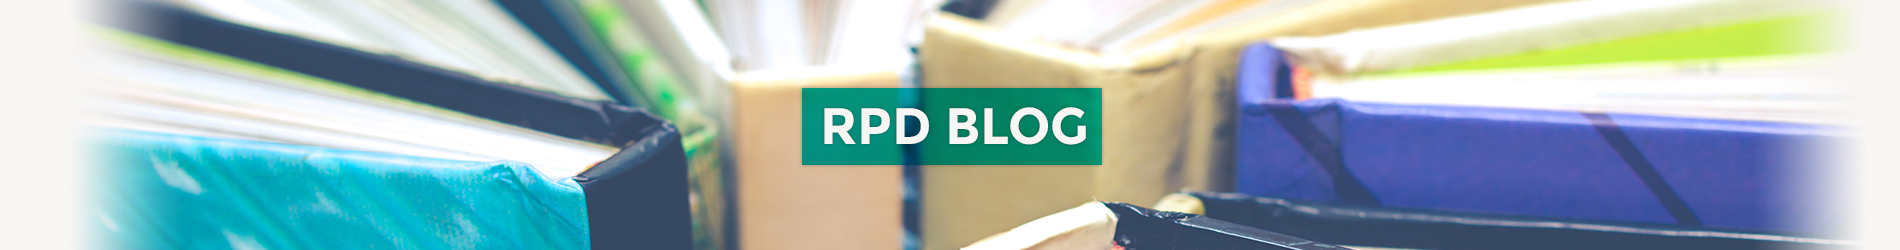 RPD Blog